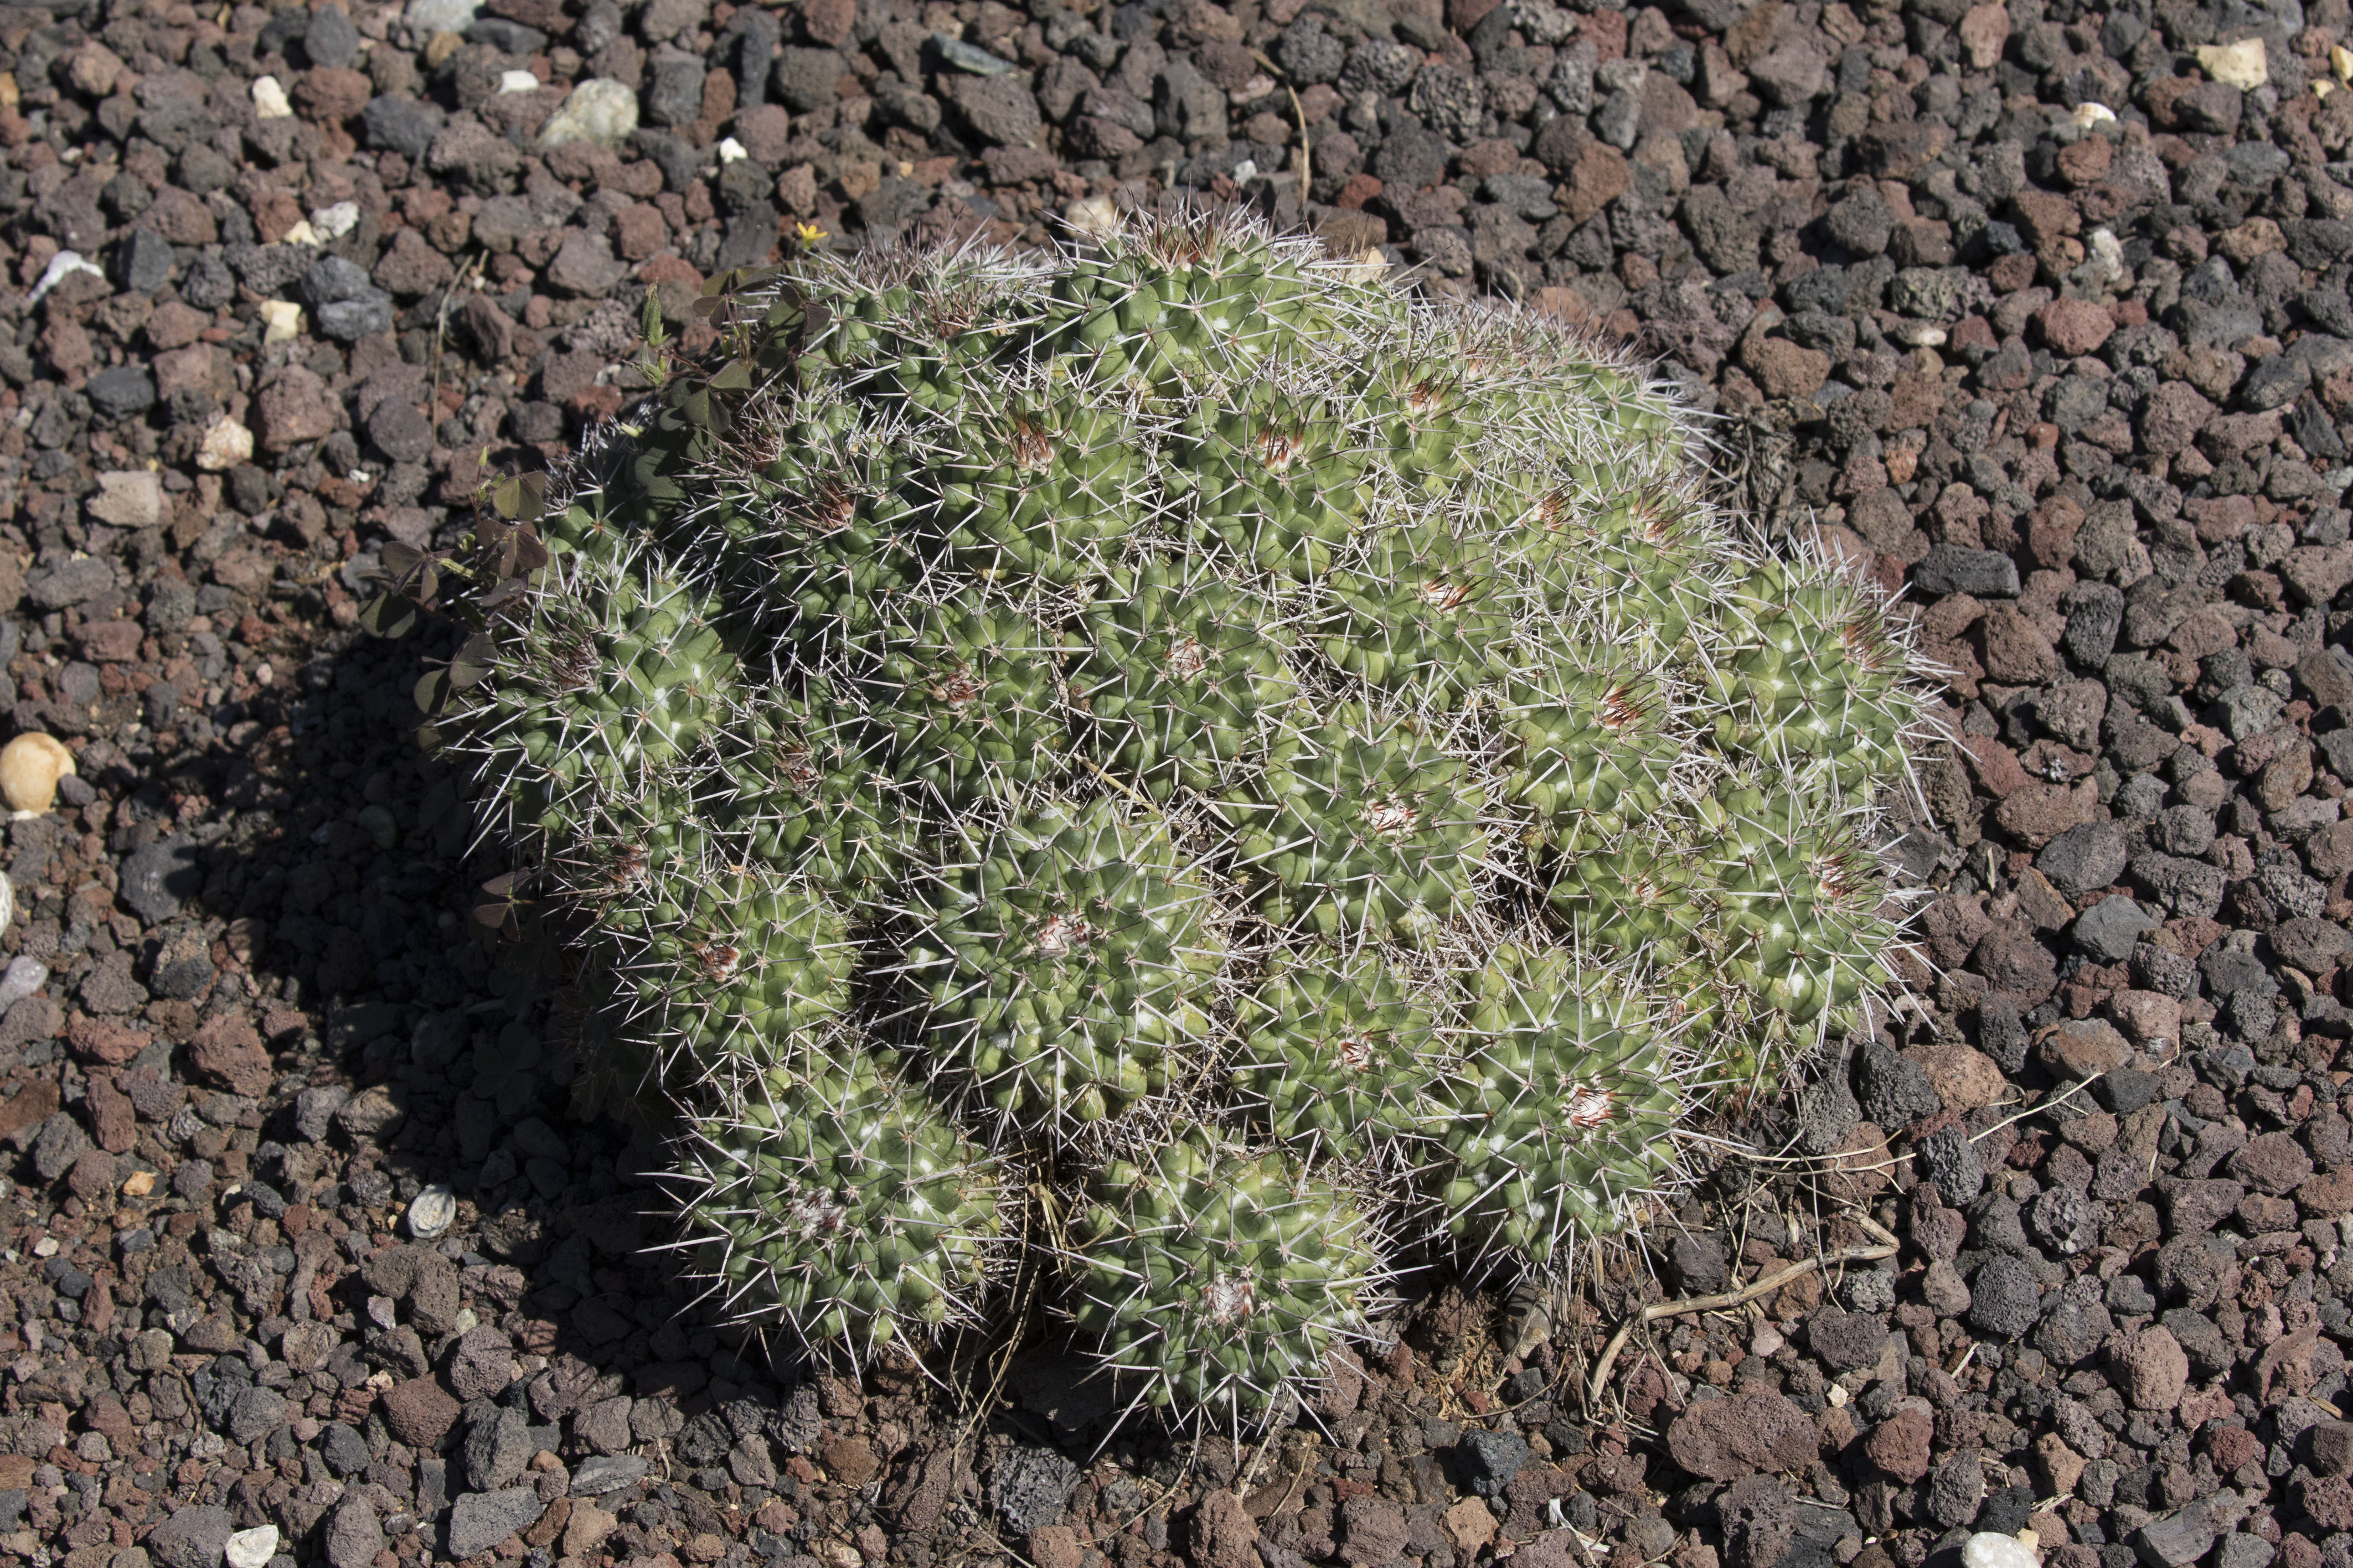 Mammillaria compress - Compressed Cactus